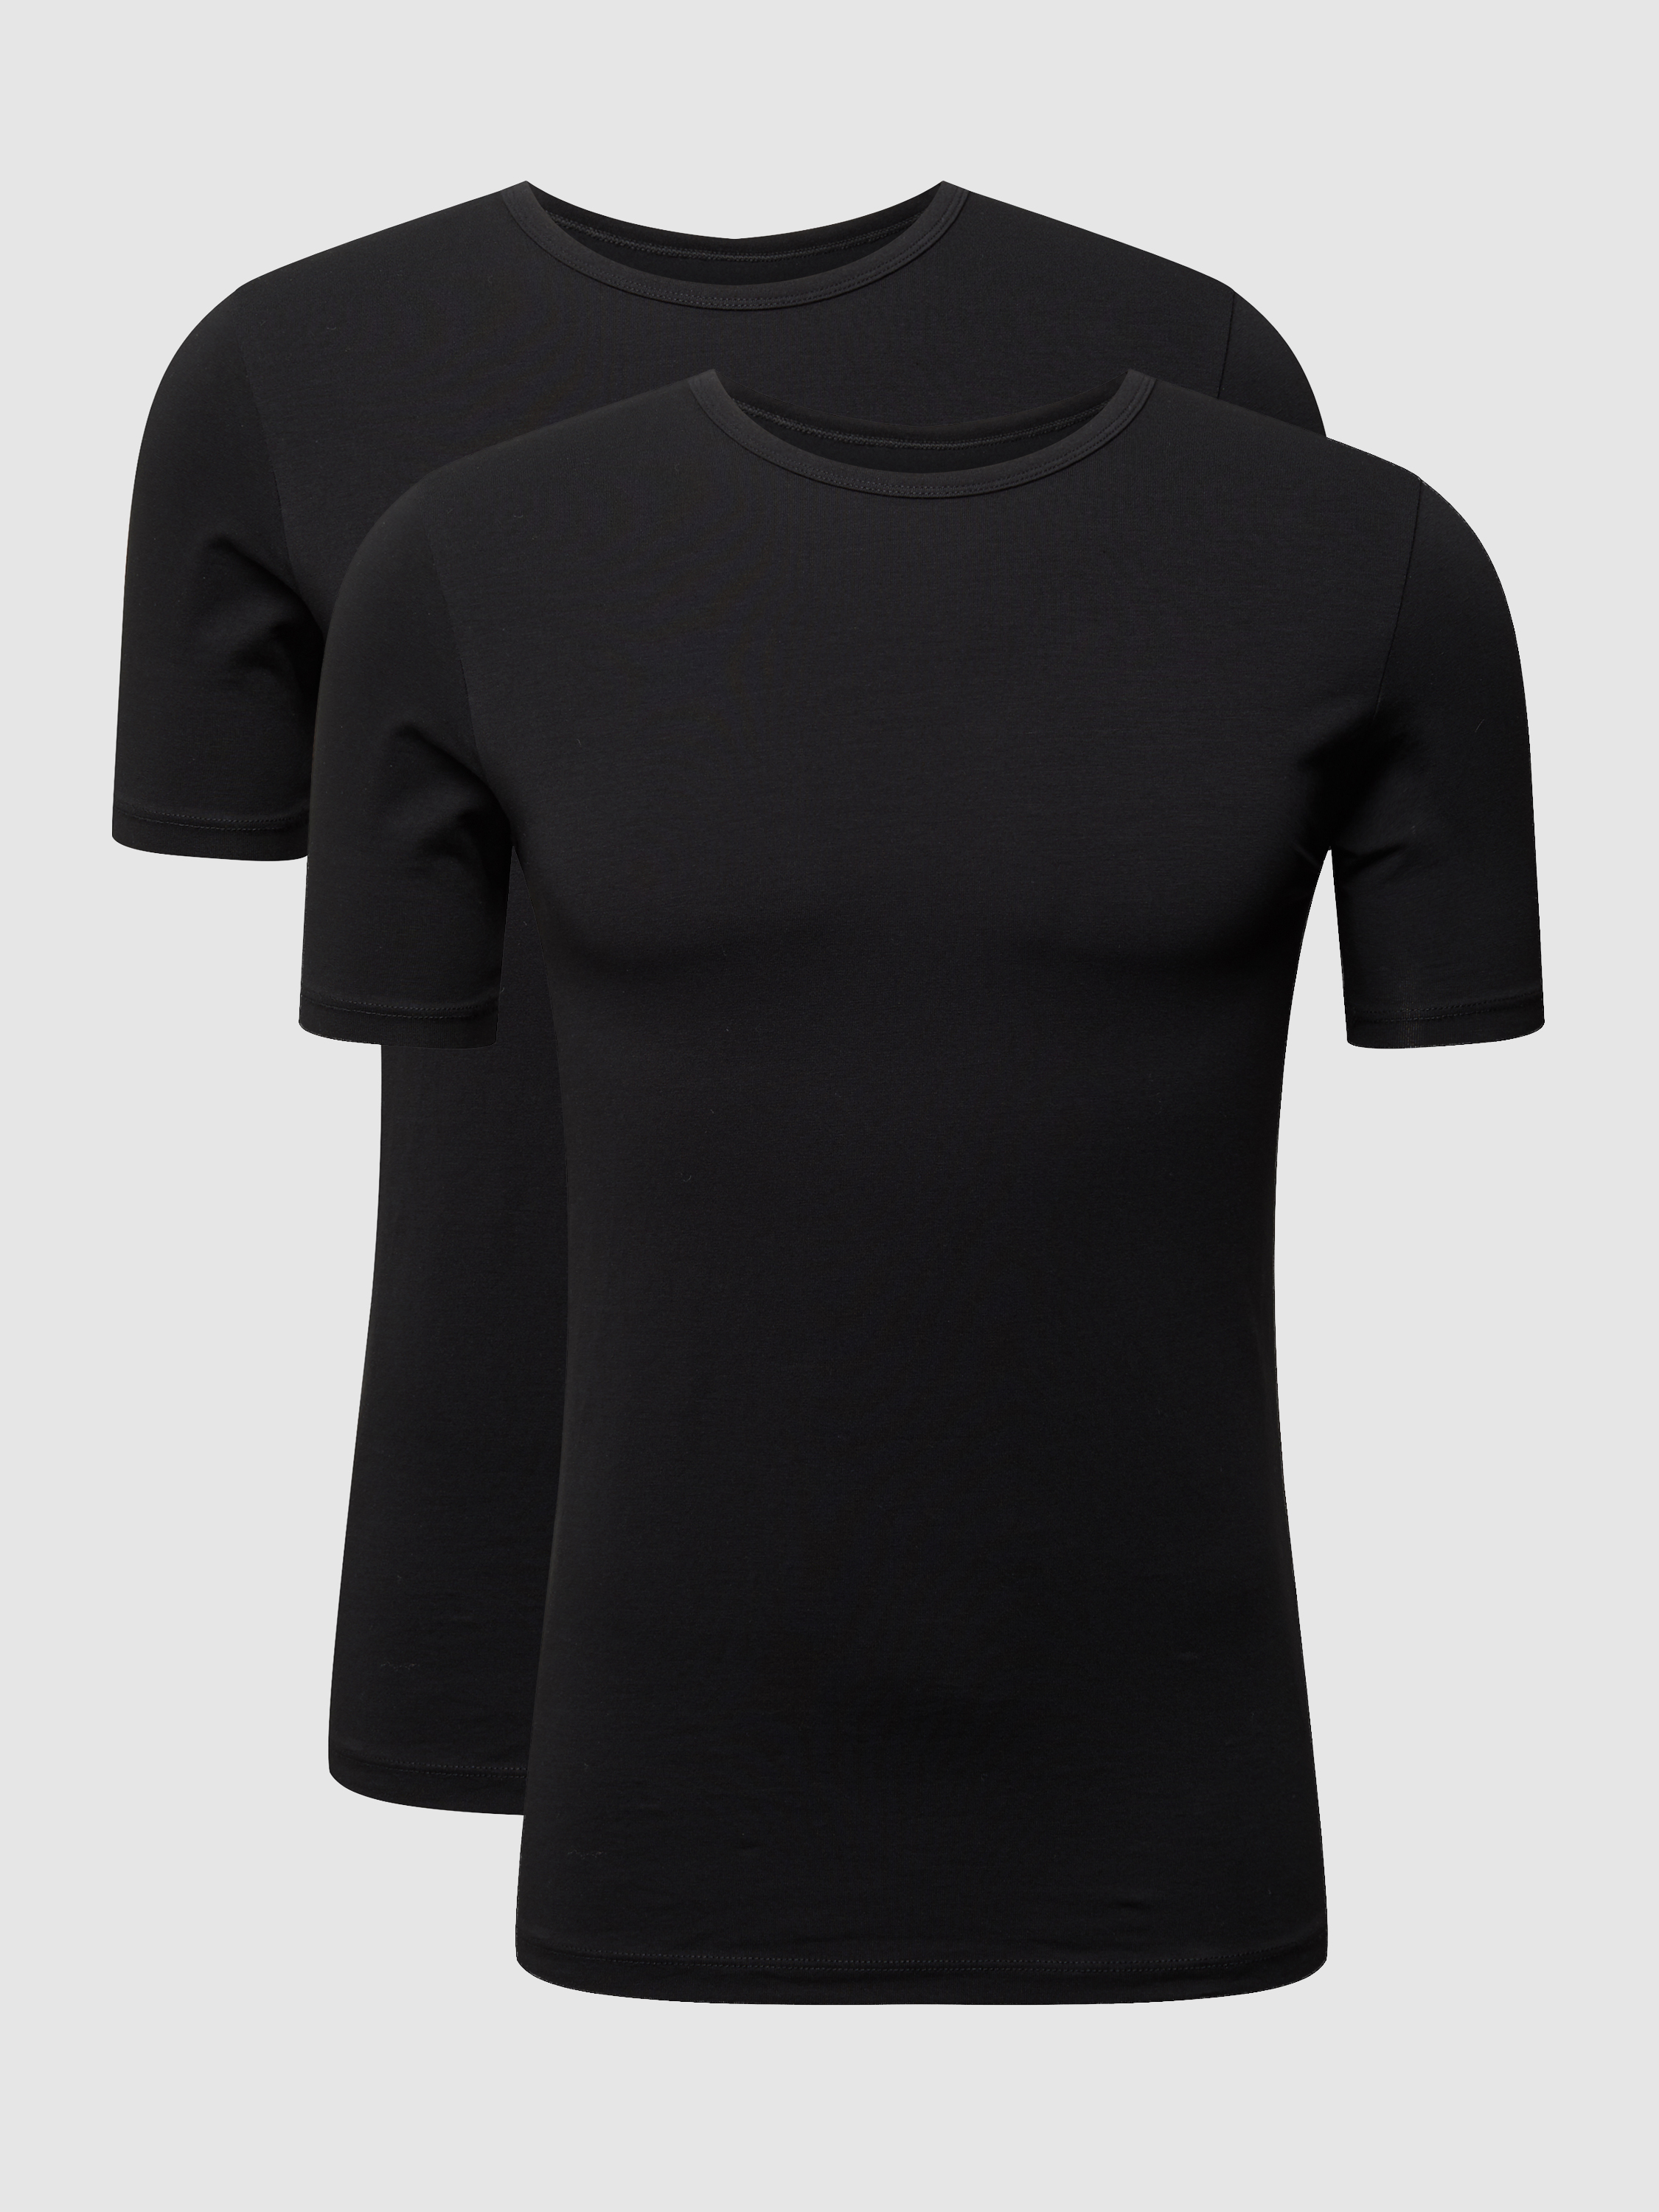 Комплект футболок мужских MCNEAL 958476 черных 3XL (доставка из-за рубежа)